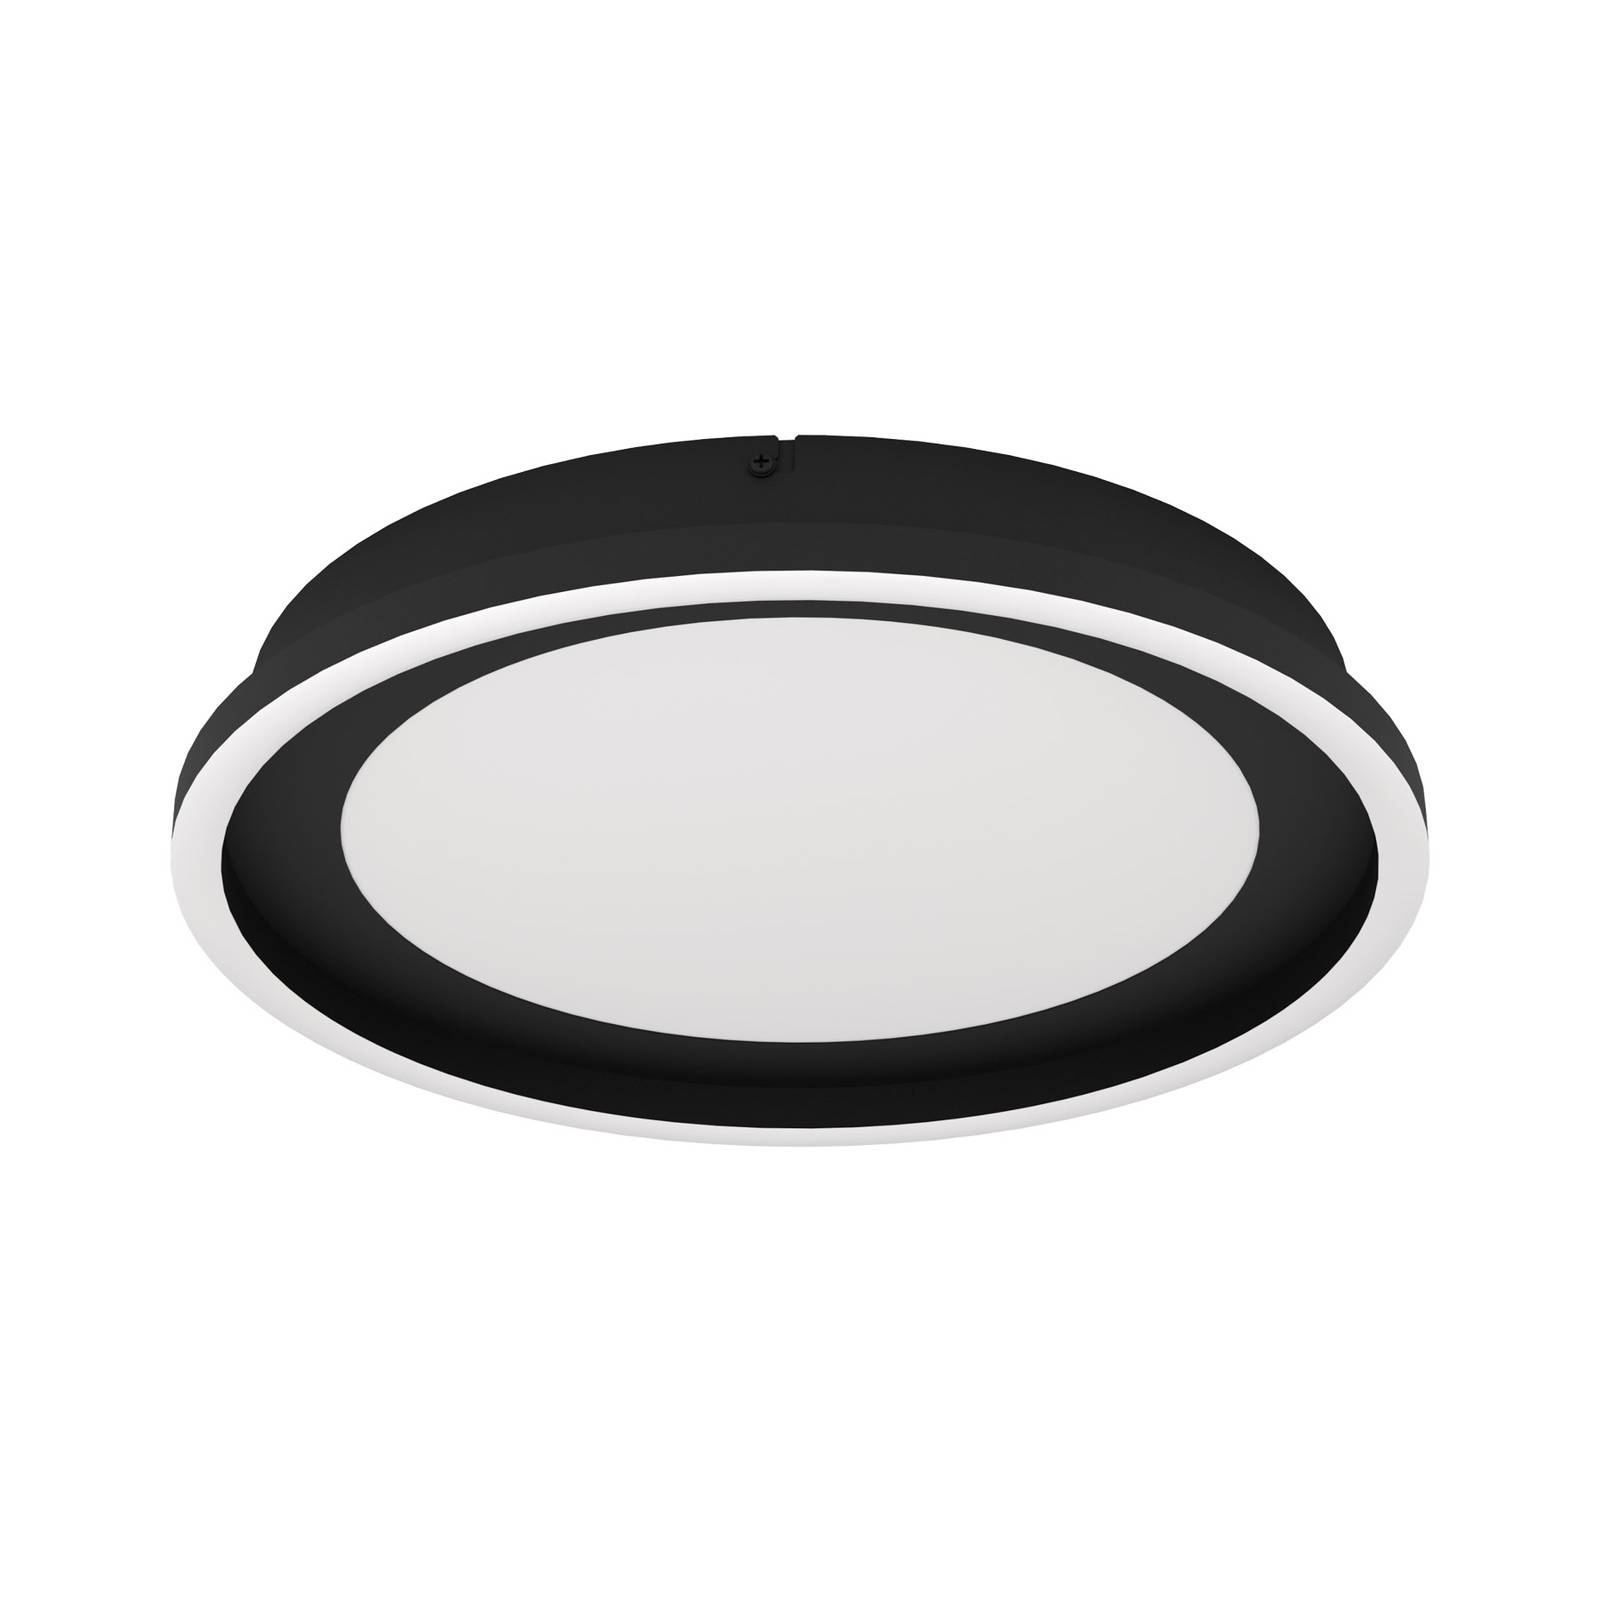 EGLO LED-Deckenlampe Calagrano mit Fernbedienung, Ø38cm